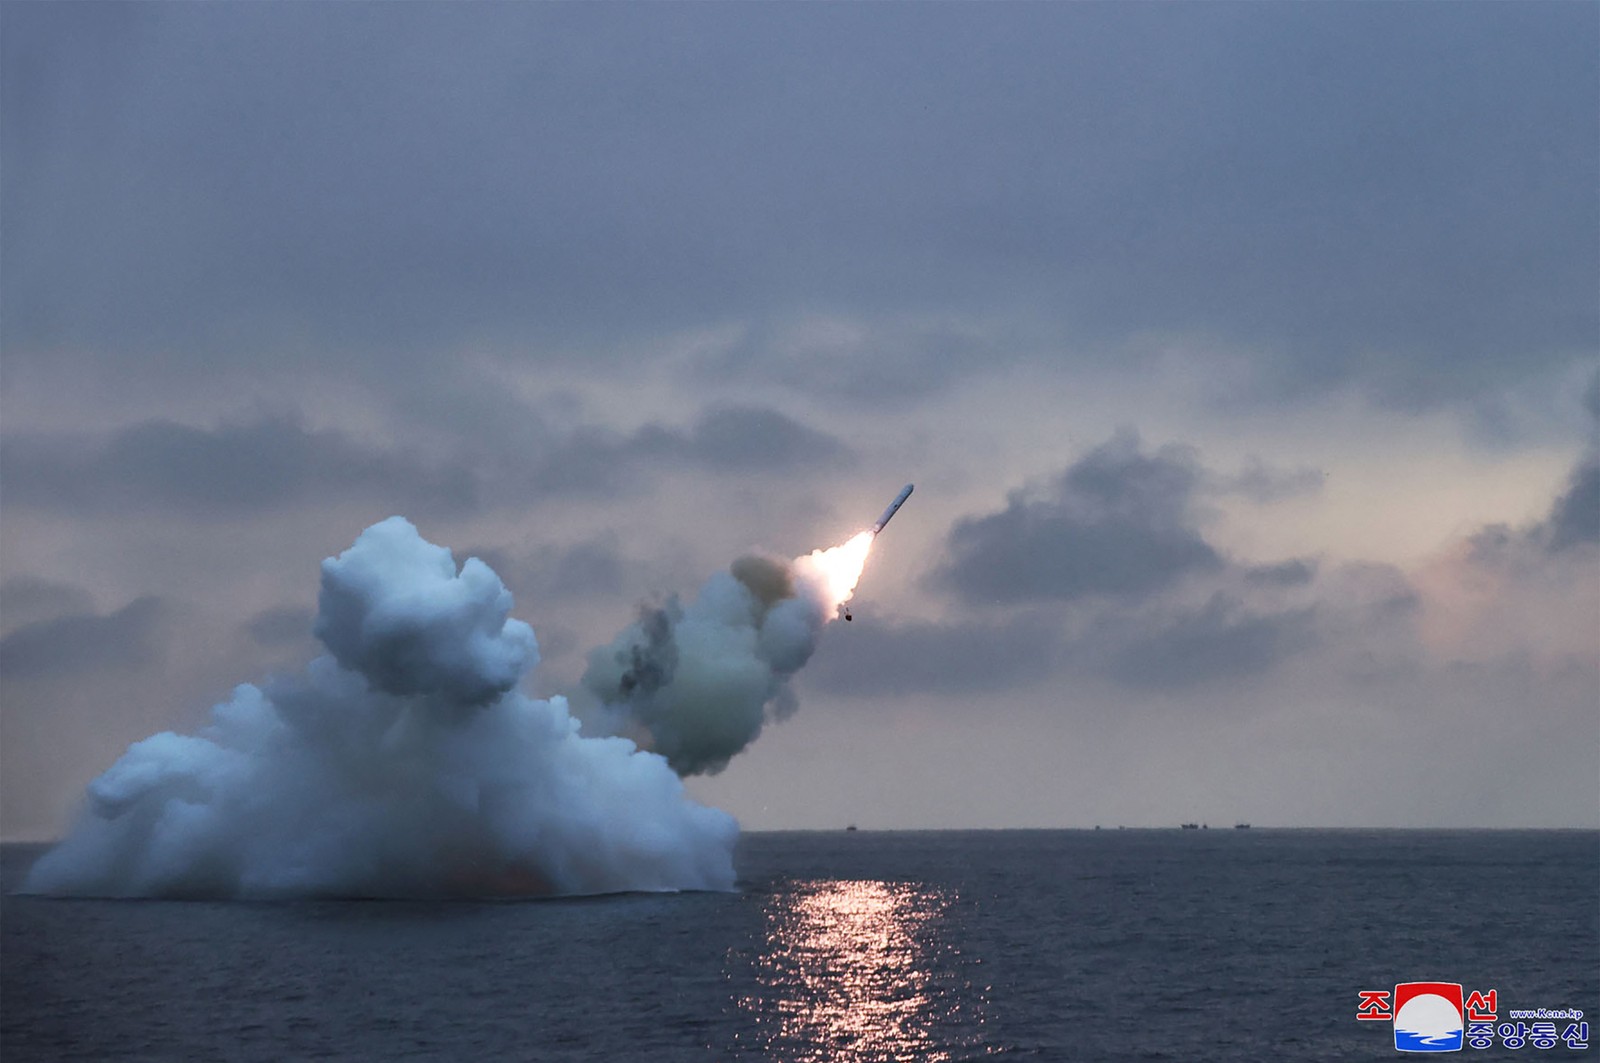 Foto divulgada pela agência estatal KCNA mostra teste de mísseis de cruzeiro da Coreia do Norte — Foto: STR KCNA VIA KNS / AFP